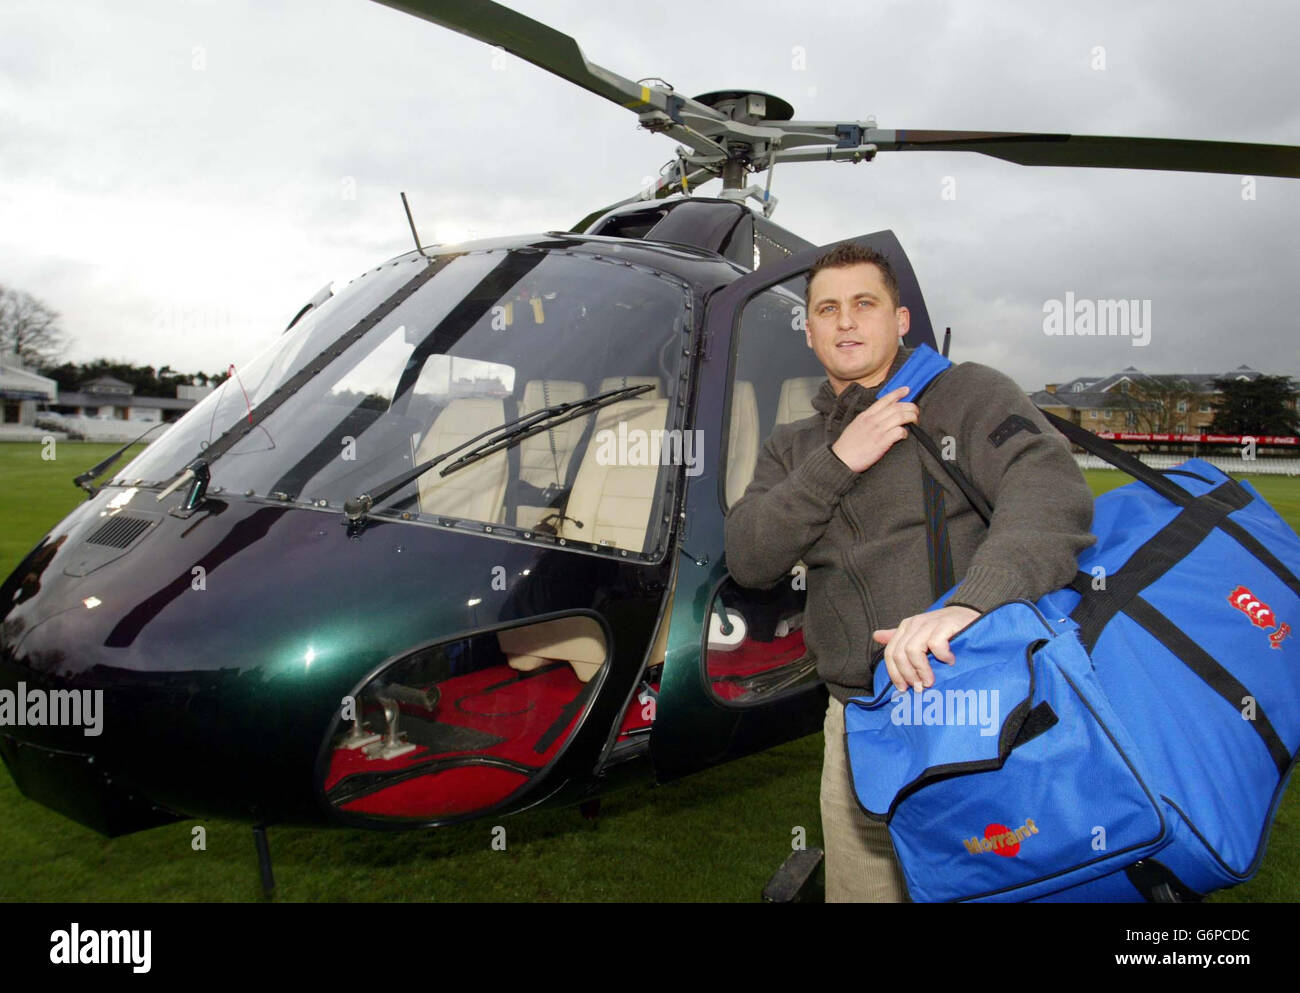 Darren Gough, der ehemalige England-Schnellbowler, kommt mit dem Hubschrauber an, um an einer Pressekonferenz teilzunehmen, um seinen offiziellen Beitritt zum Essex County Cricket Club bekannt zu geben. Der 33-jährige Yorkshireman hat Essex vor Warwickshire gewählt, der auch ursprünglich auf der Jagd nach seinen Diensten war. Stockfoto